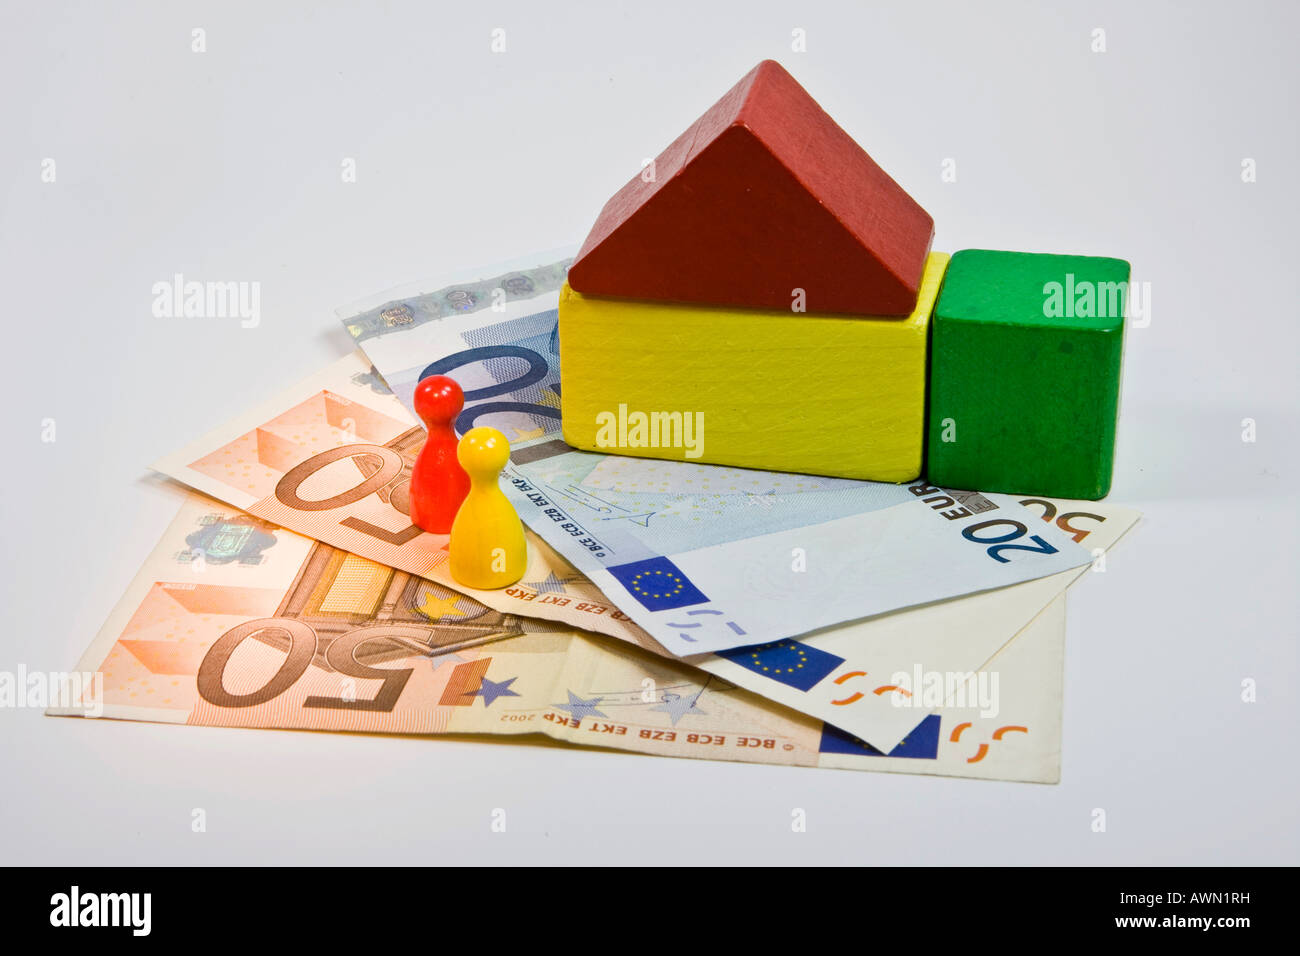 La construcción de vivienda y crédito: el aumento de las tasas de interés sobre préstamos, hipotecas y crisis inmobiliaria Foto de stock